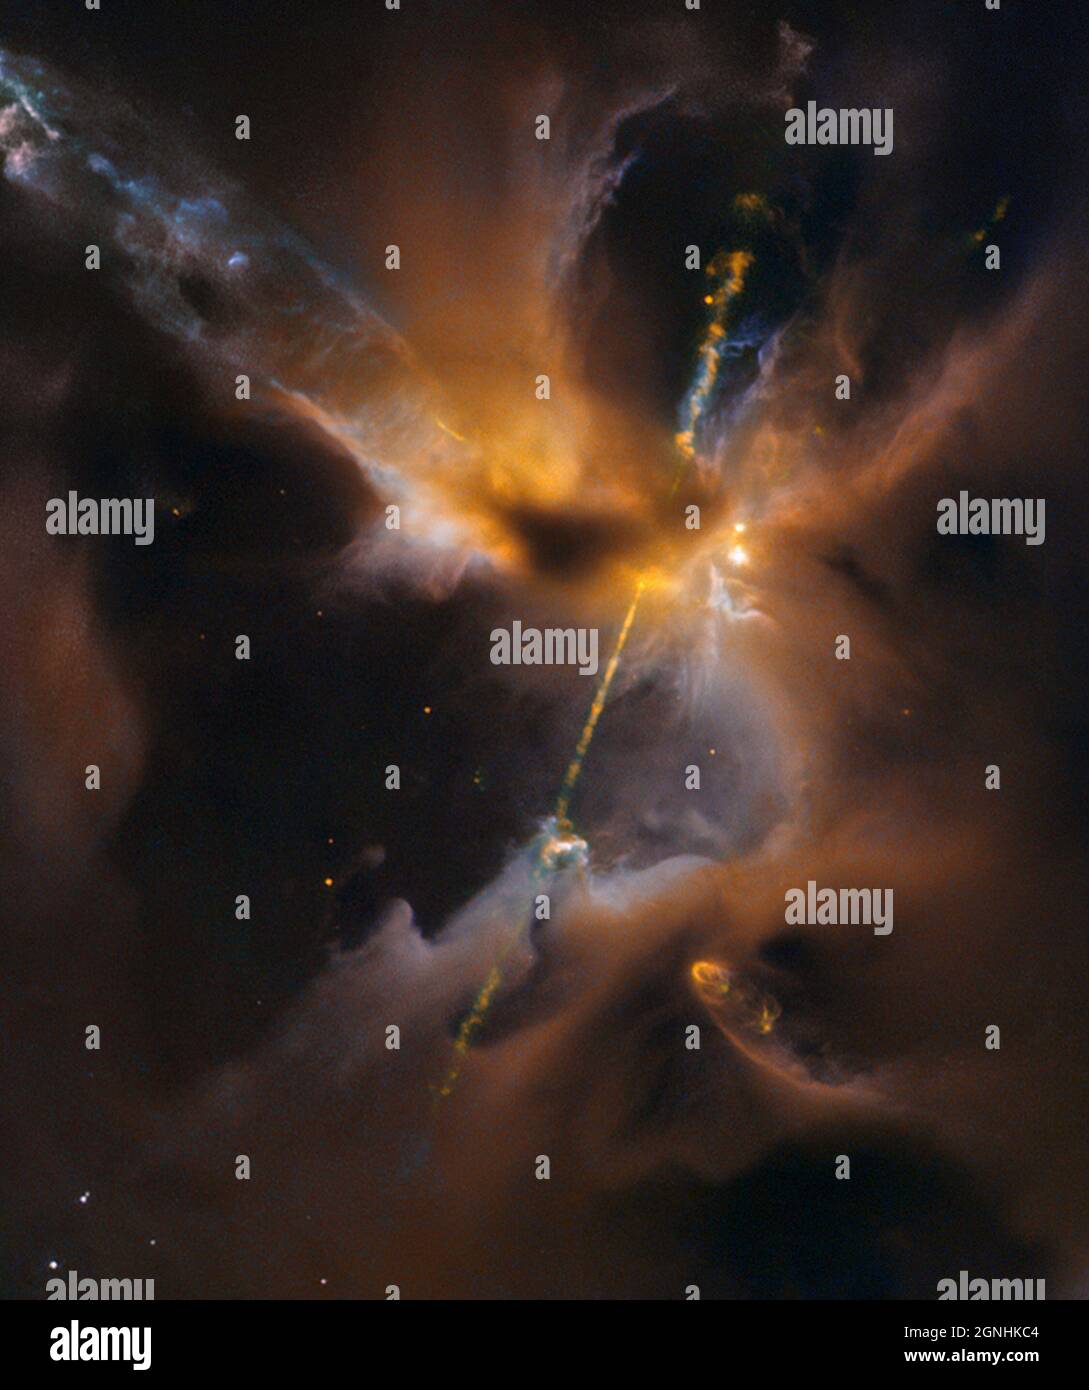 Jets aus ionisiertem Gas, die aus den Polen der sich bildenden Sterne ausgestoßen werden, werden als Herbig-Haro (HH)-Objekte bezeichnet. Das prominente HH-Objekt in diesem Bild ist HH 24 in der Orion-Sternentstehungsregion. Bildquelle NASA/ESA Hubble Space Telescope Stockfoto